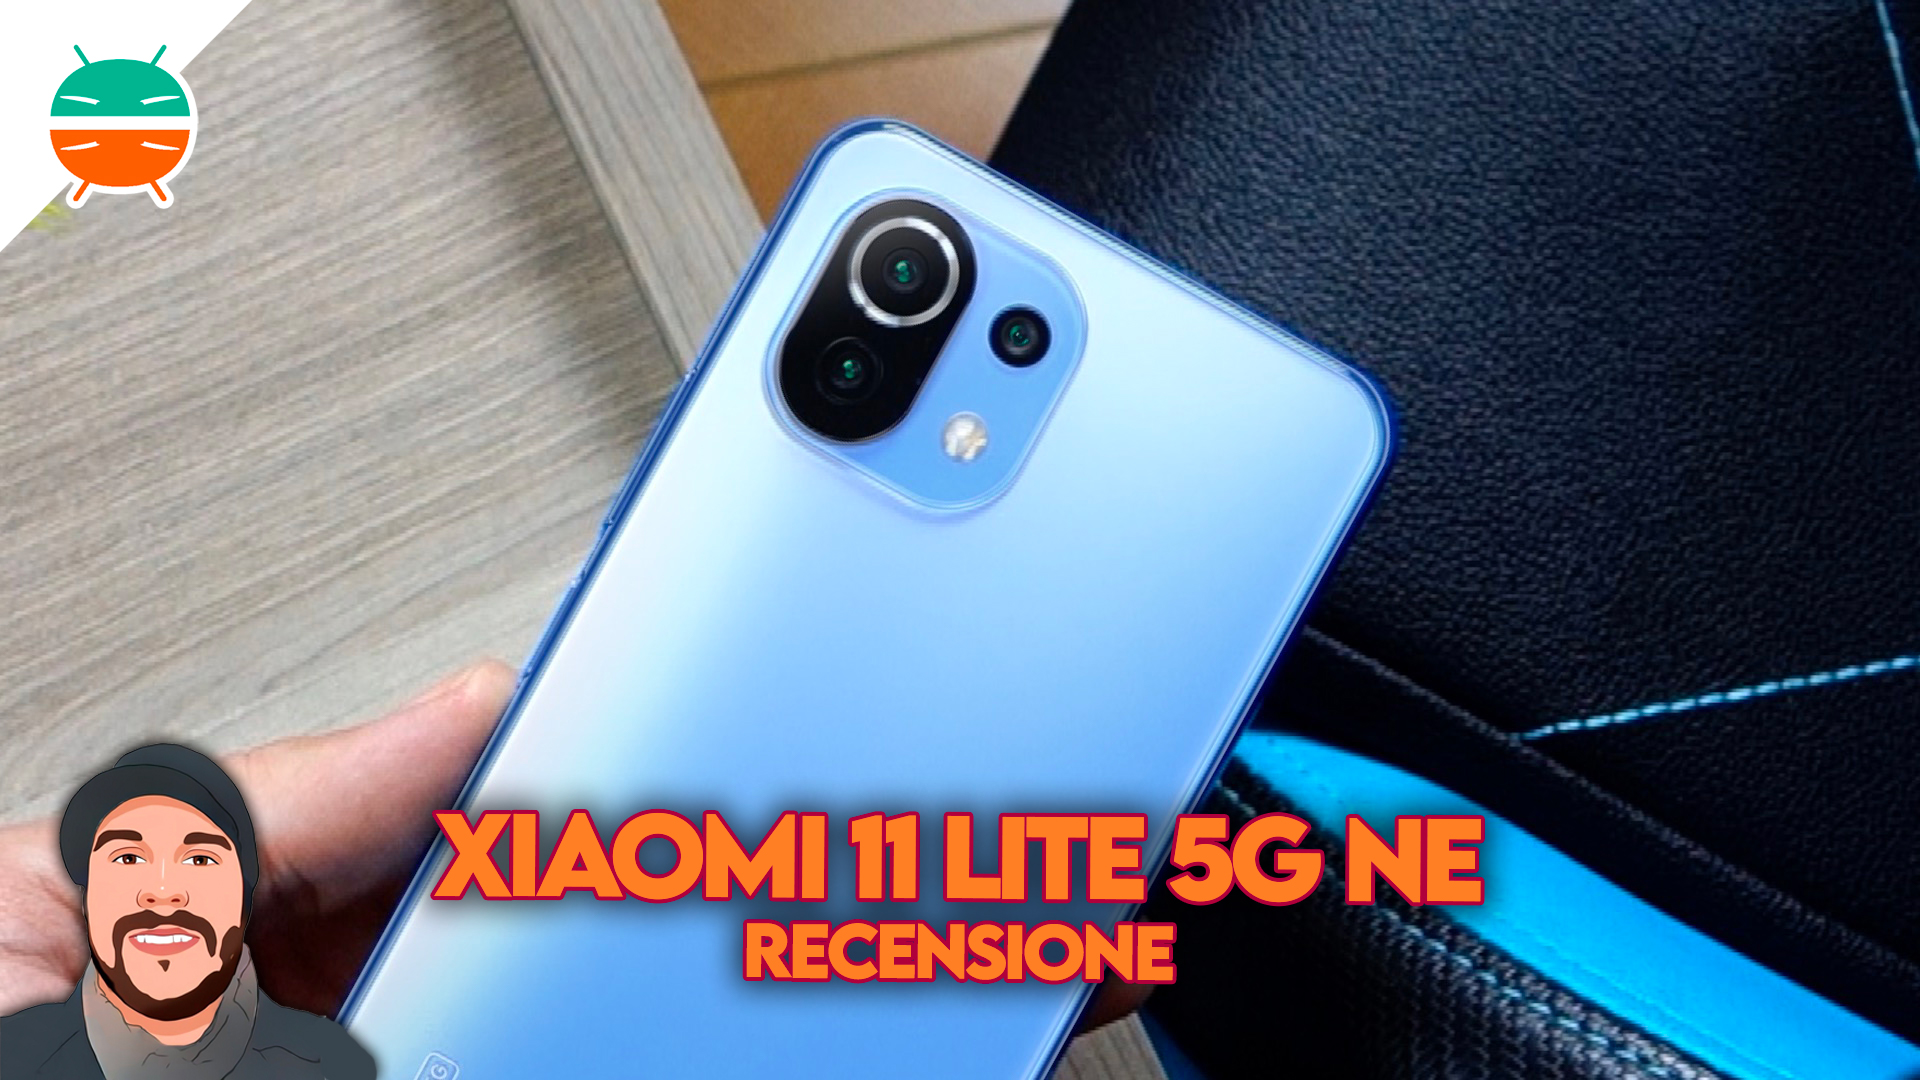 Xiaomi 11 Lite 5G NE review: Camera